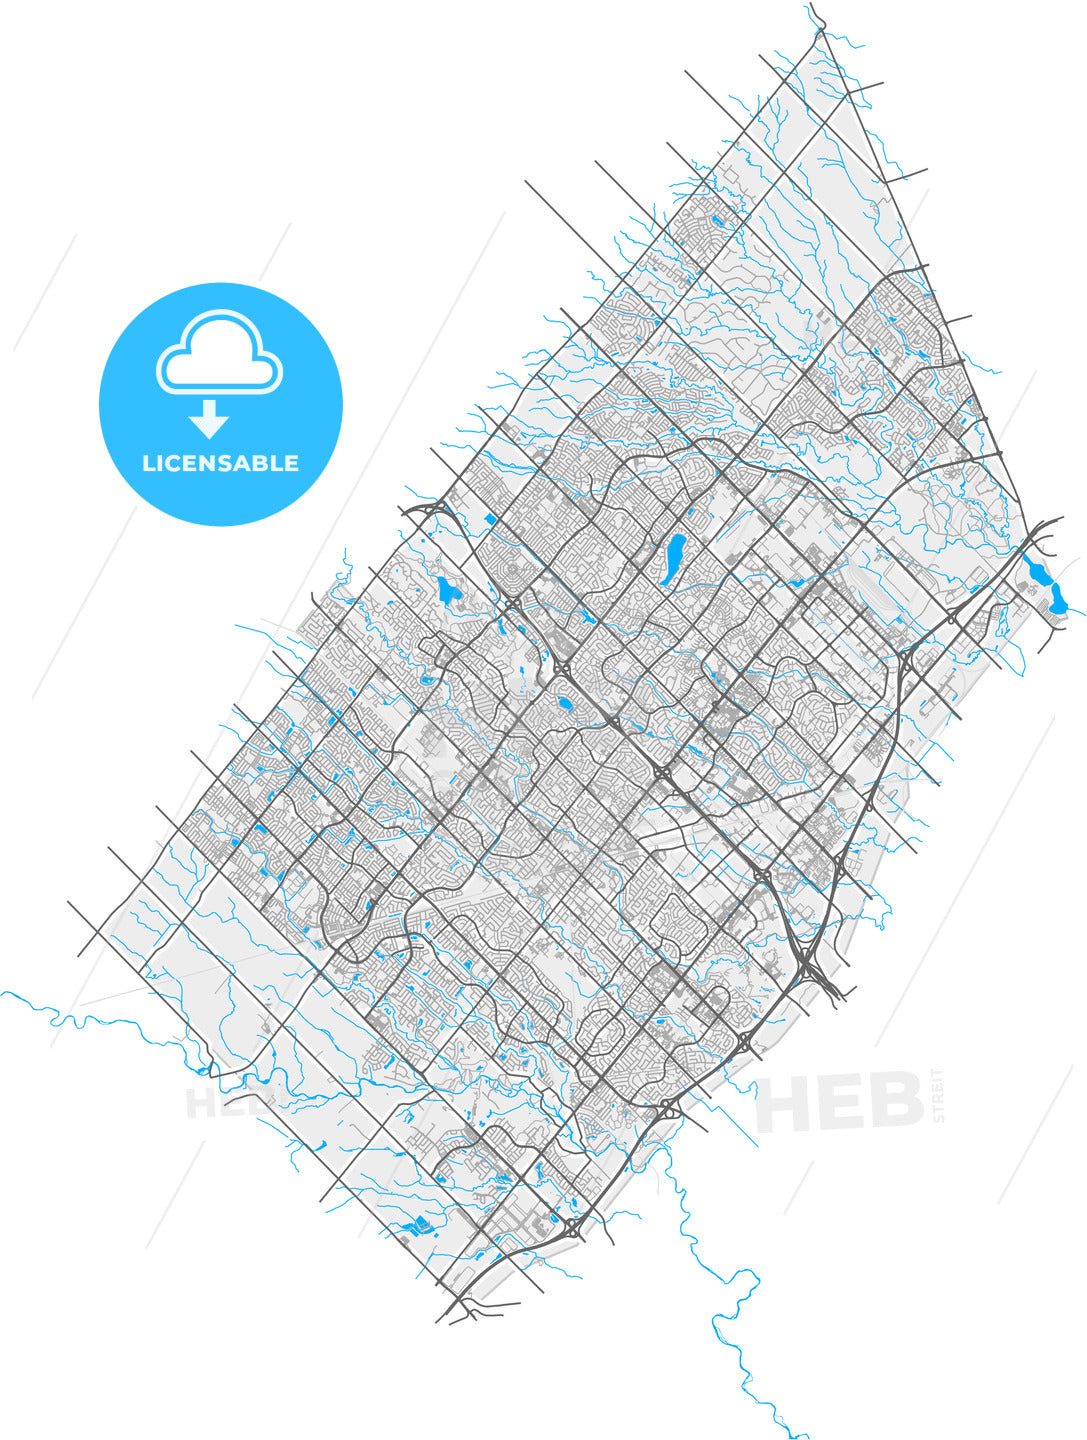 Brampton, Ontario, Canada, high quality vector map